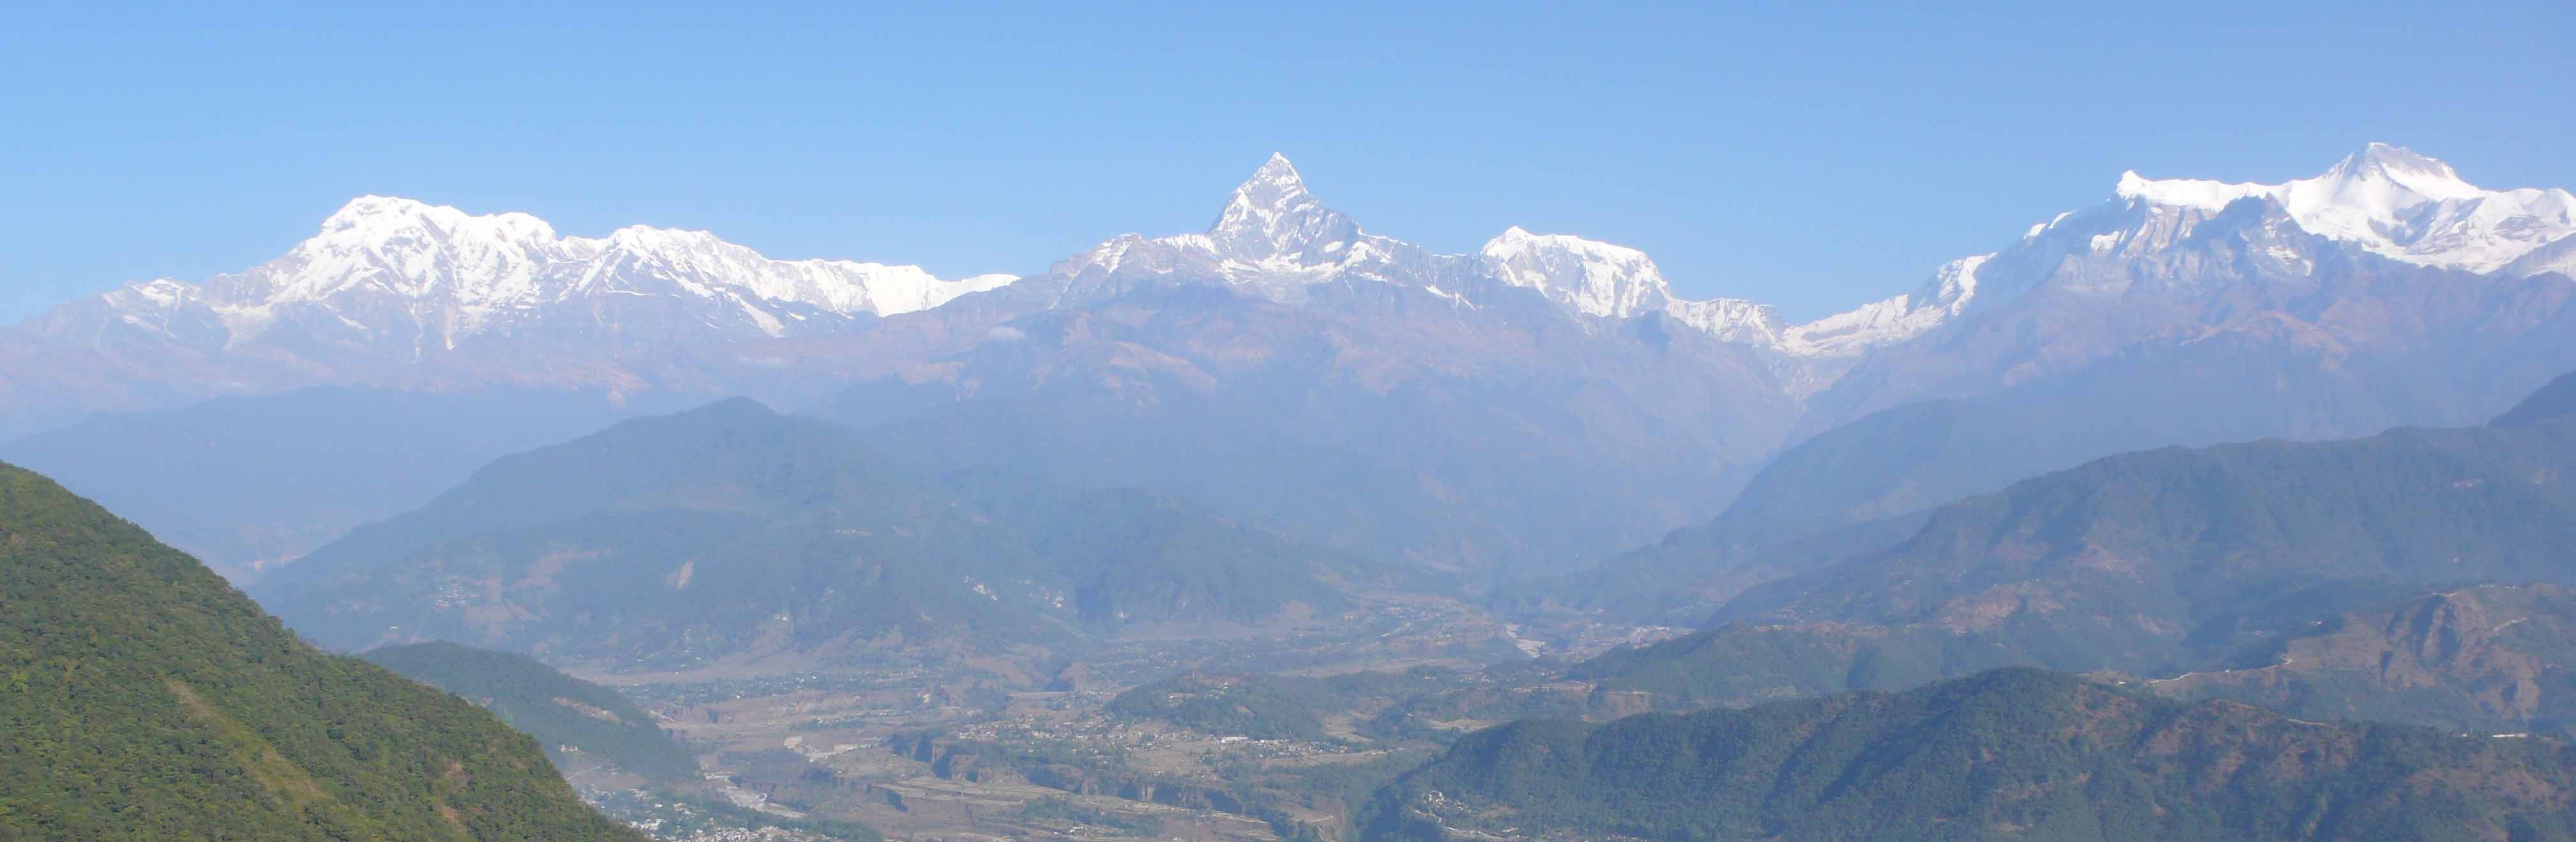 Trekking Poon Hill na região dos Annapurnas